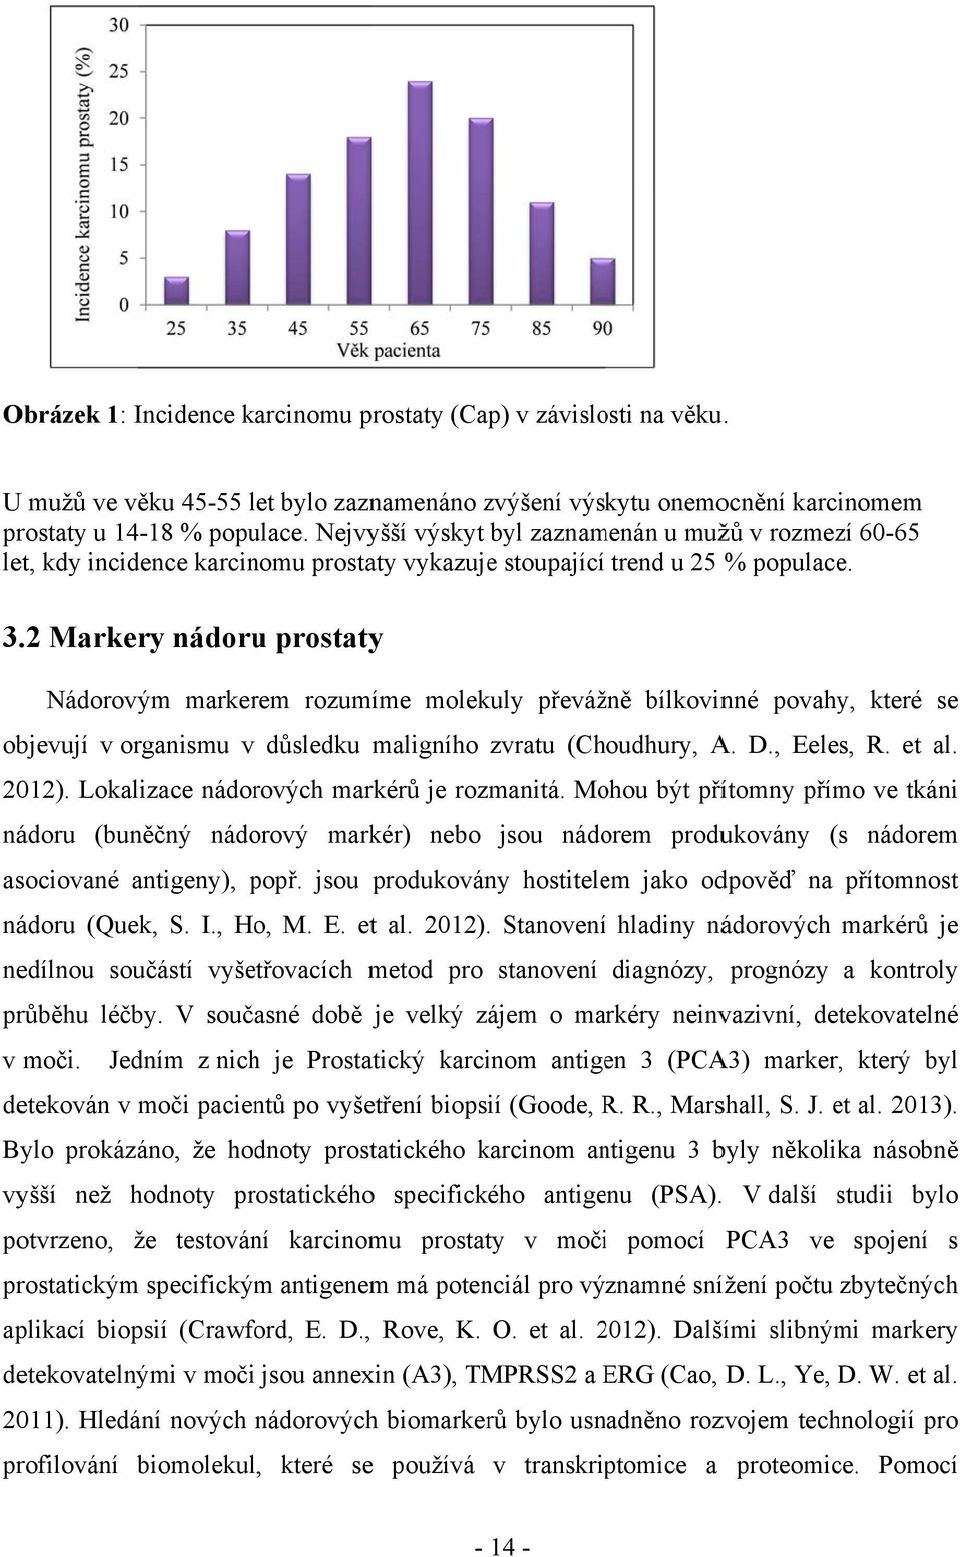 .2 Markery nádoru prostatyy Nádorovým markerem rozumíme molekuly převážně bílkovinné povahy, které se objevují v organismu v důsledku maligního zvratu (Choudhury, A. D., Eeles, R. et al. 2012).